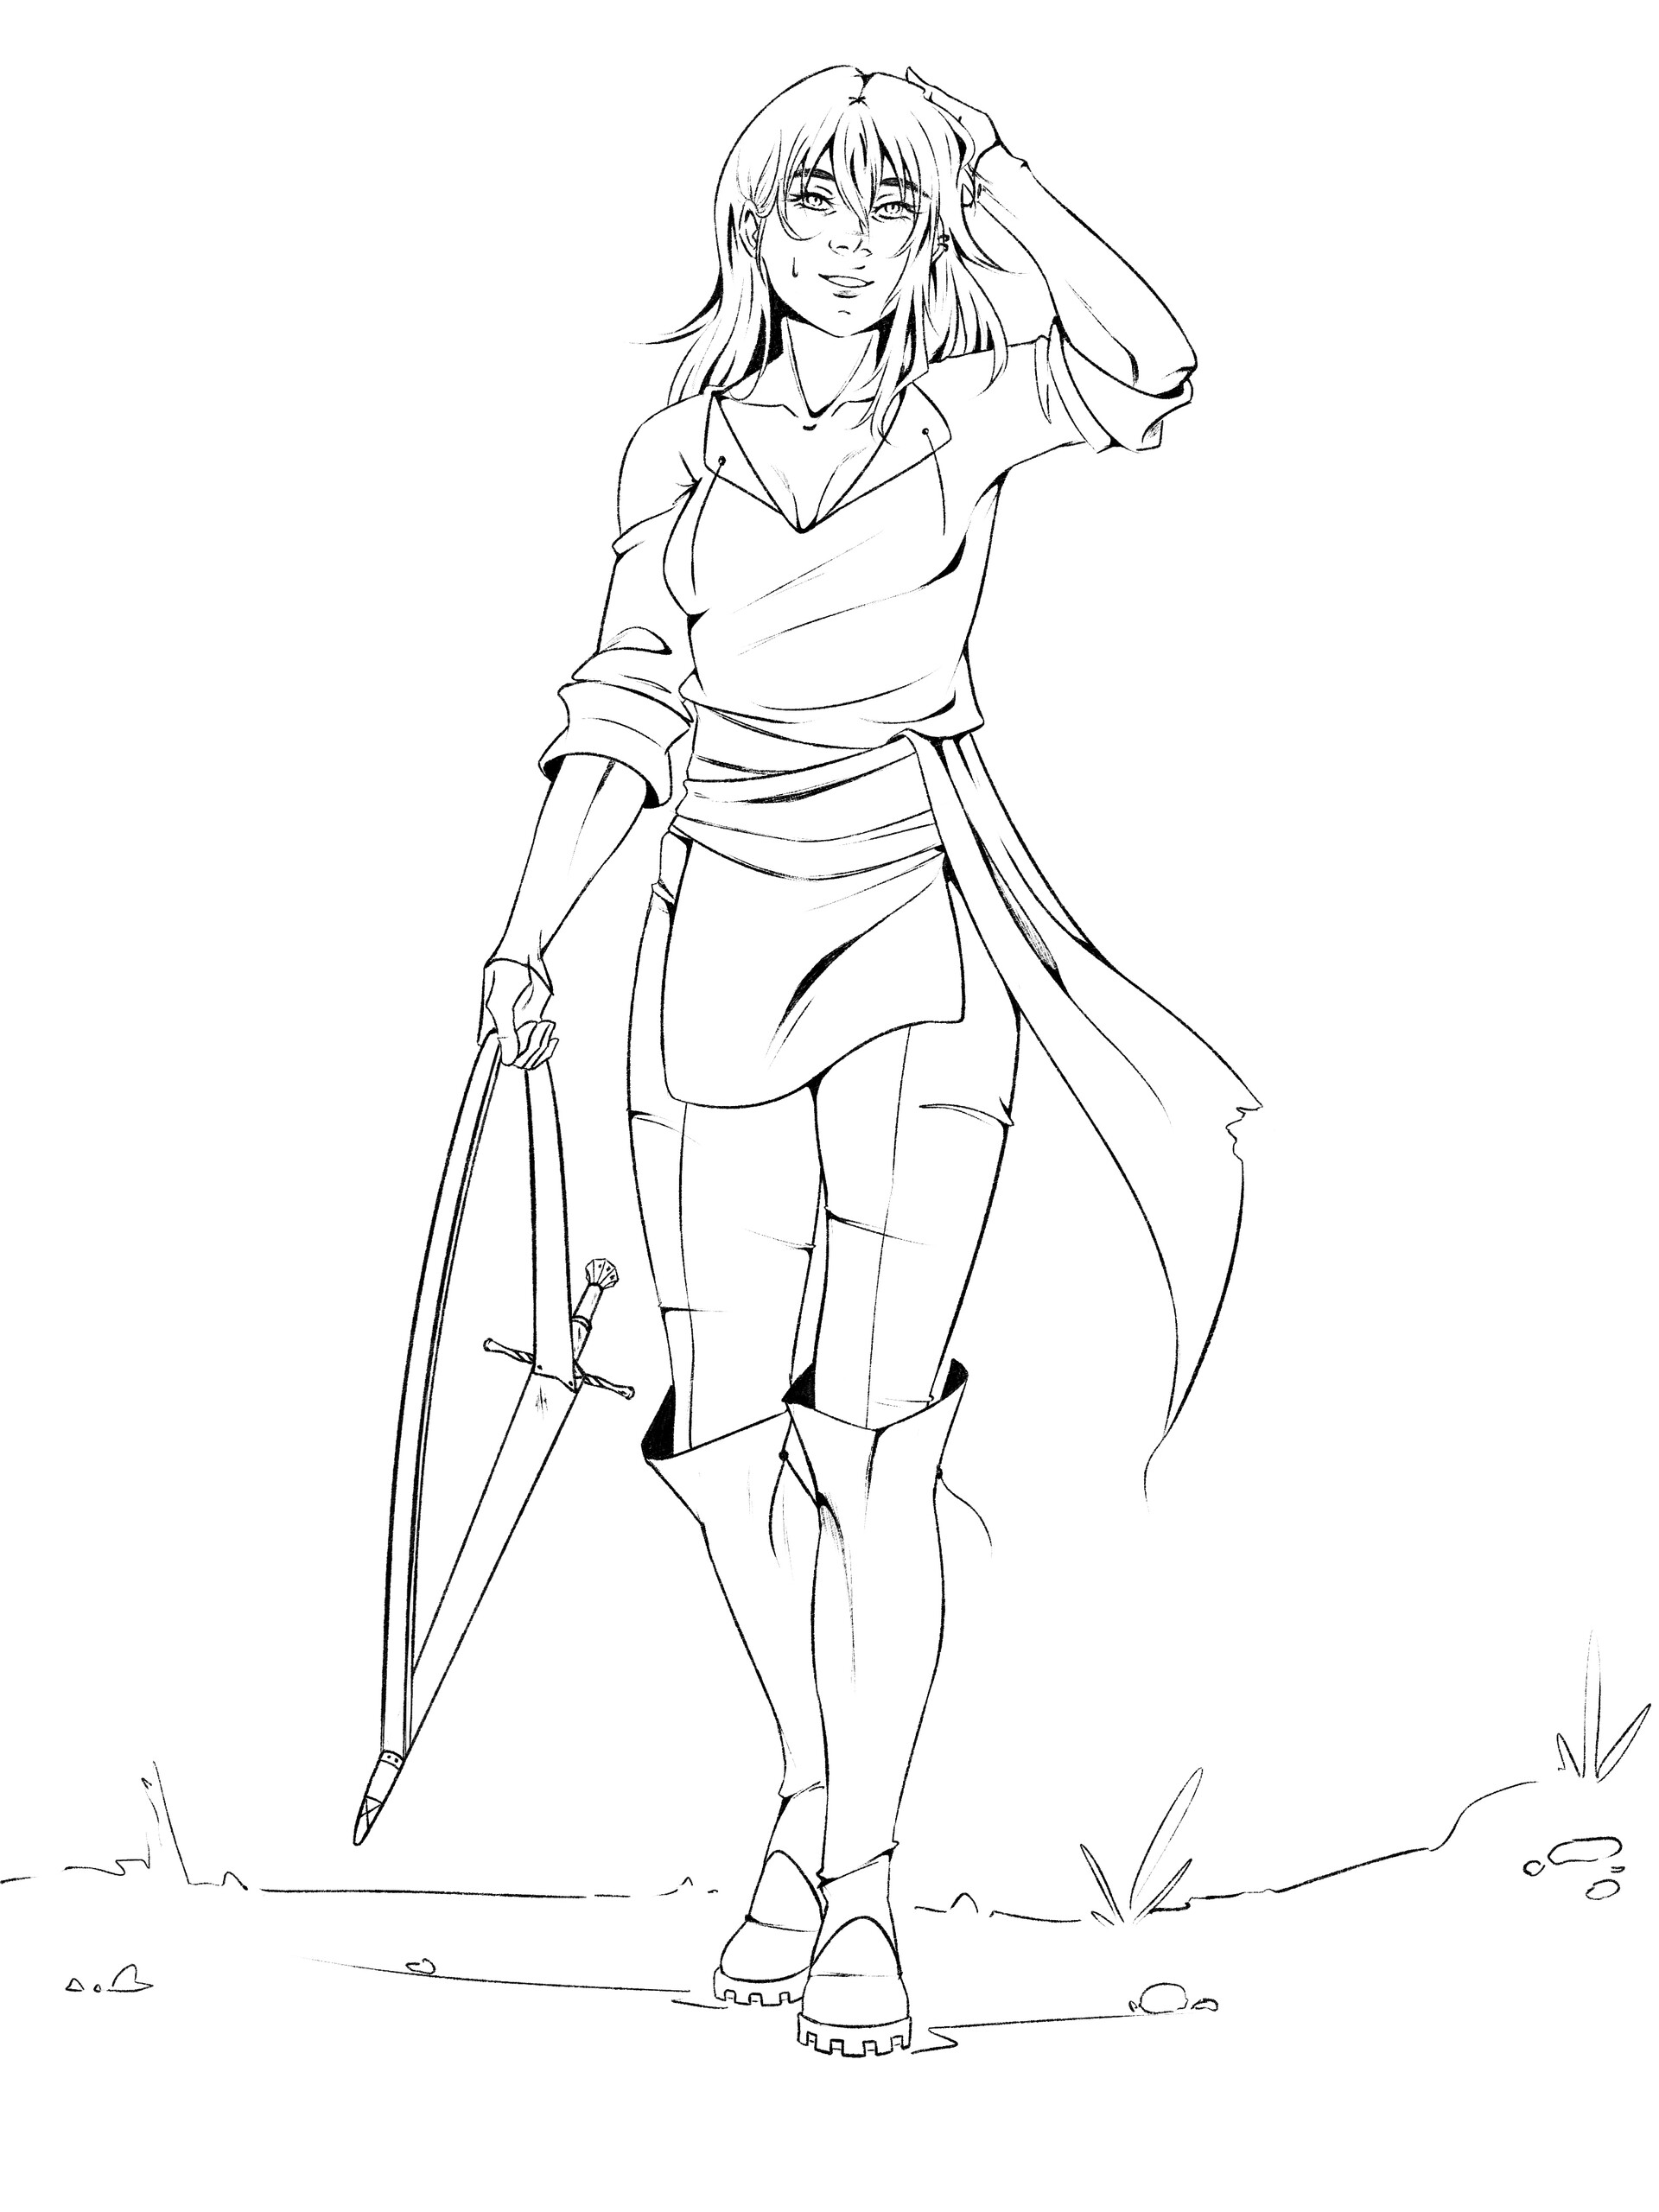 ArtStation - Sword girl